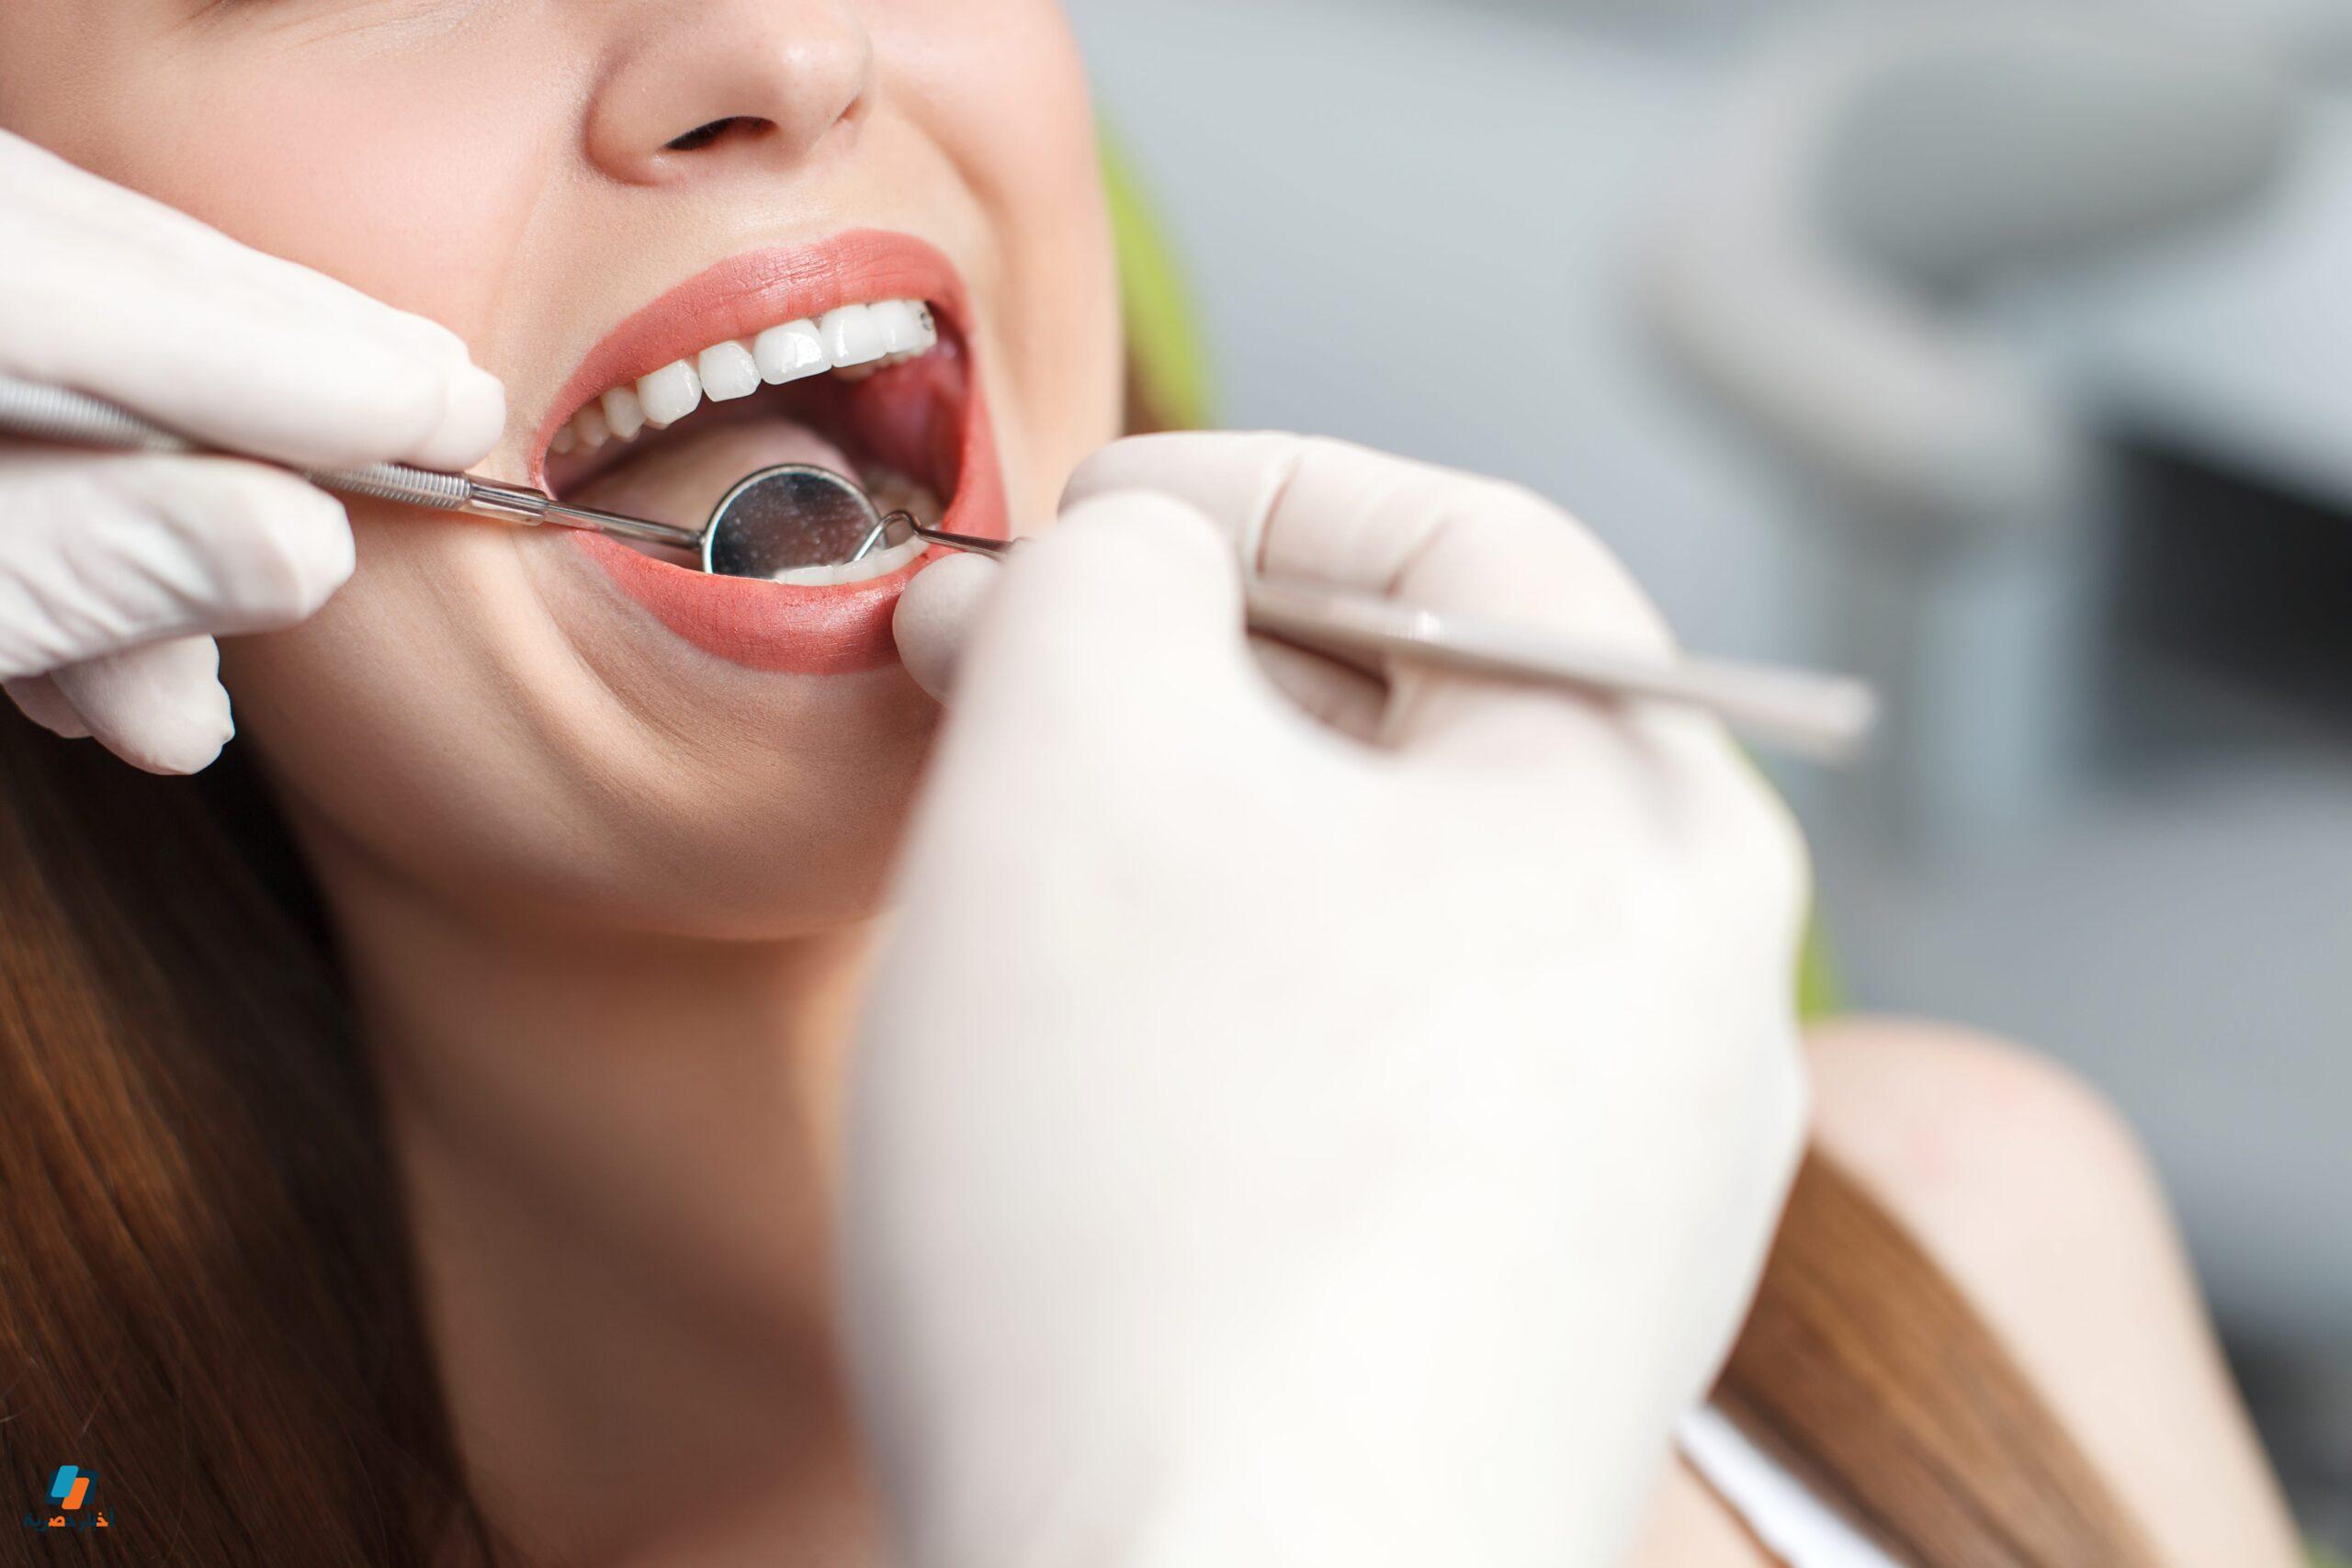 وصفة طبيعية لعلاج وجع الأسنان